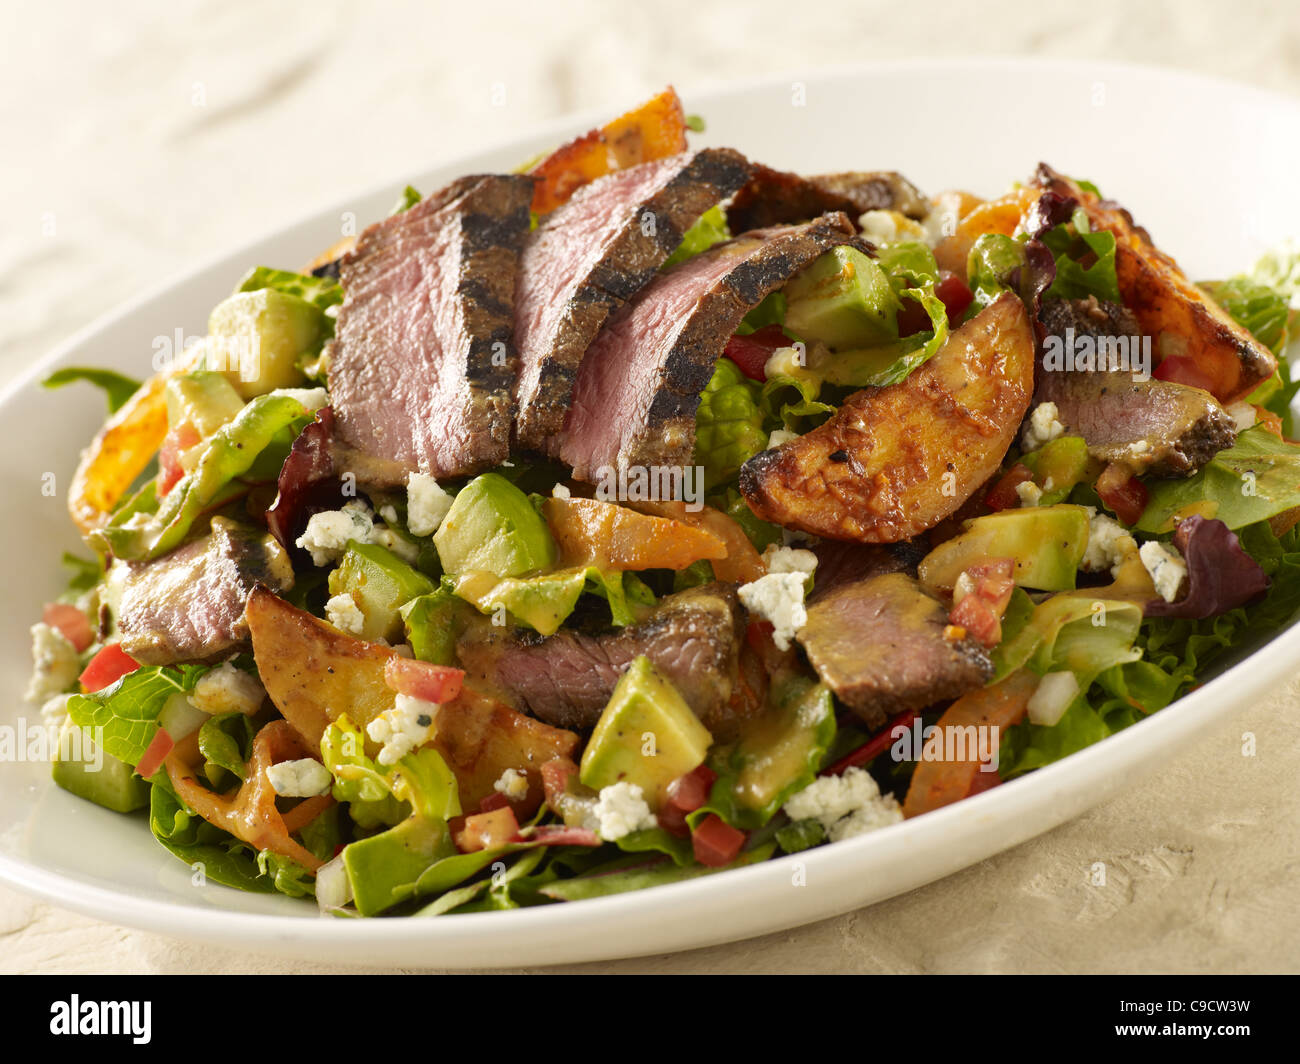 Le steak grillé et salade de pommes de terre Banque D'Images